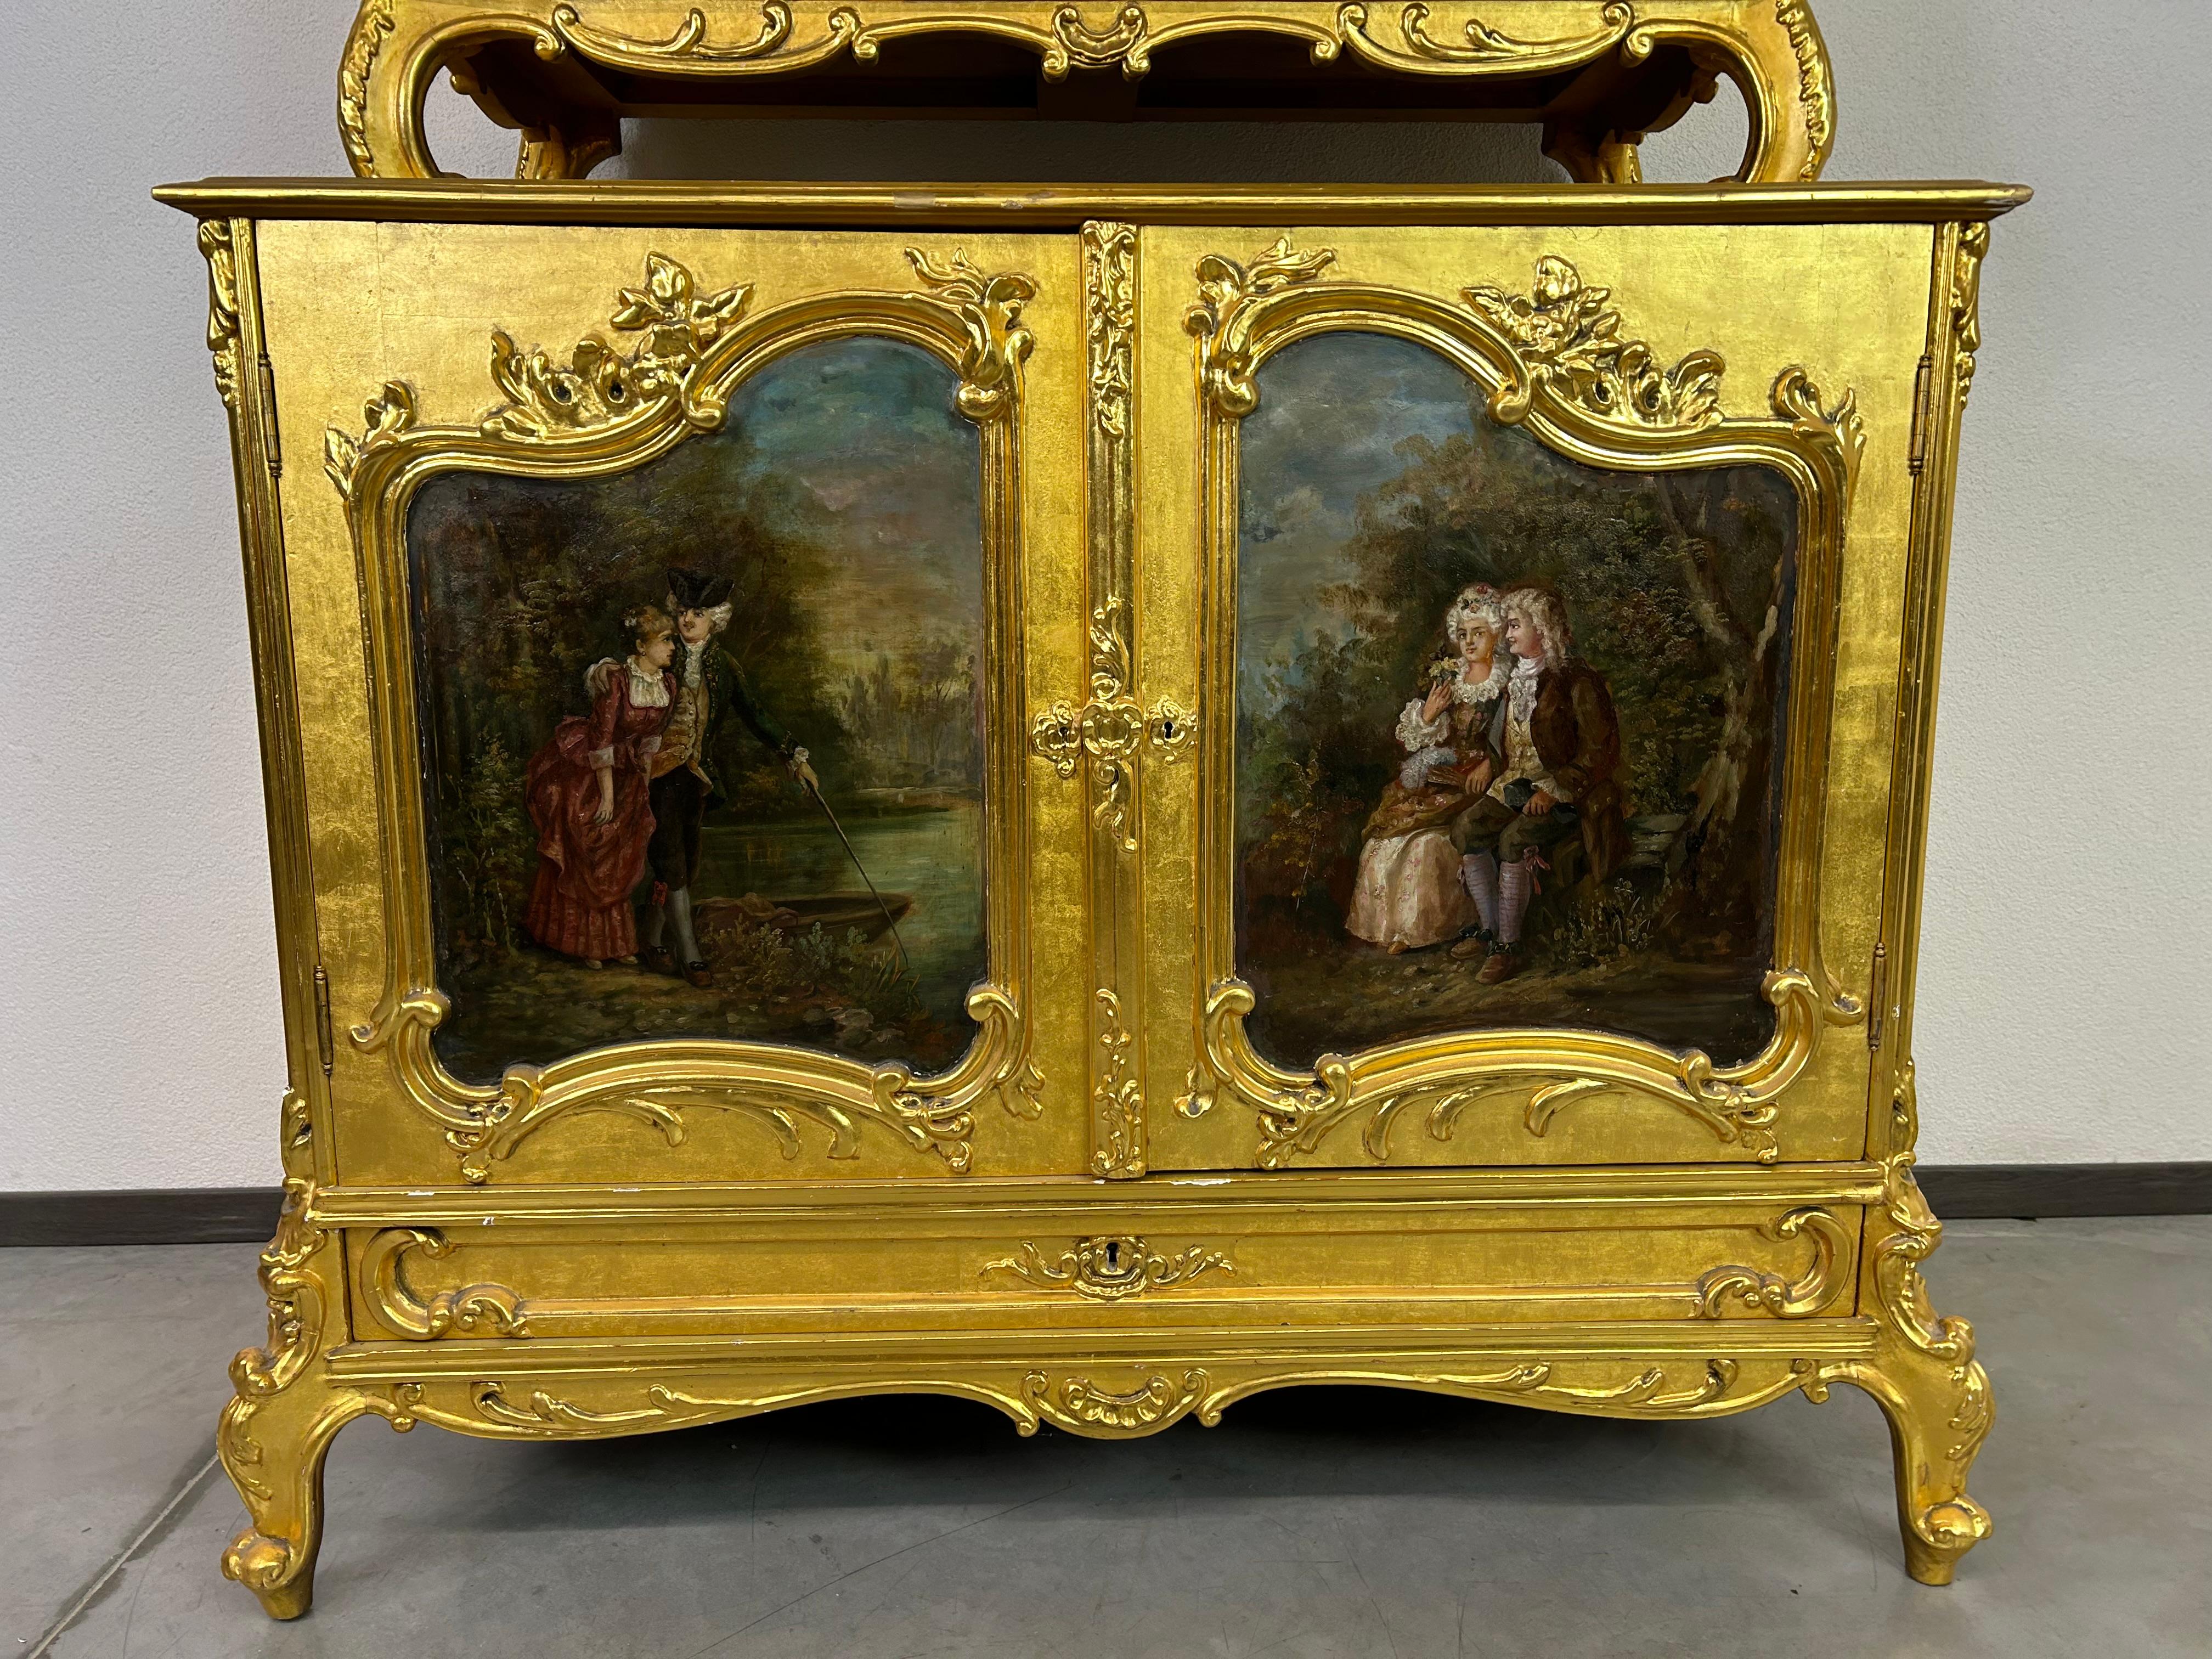 Buffet rococo doré du 18e siècle. Finition polychrome dorée, portes peintes à la main, belle conservation d'origine avec traces d'utilisation.